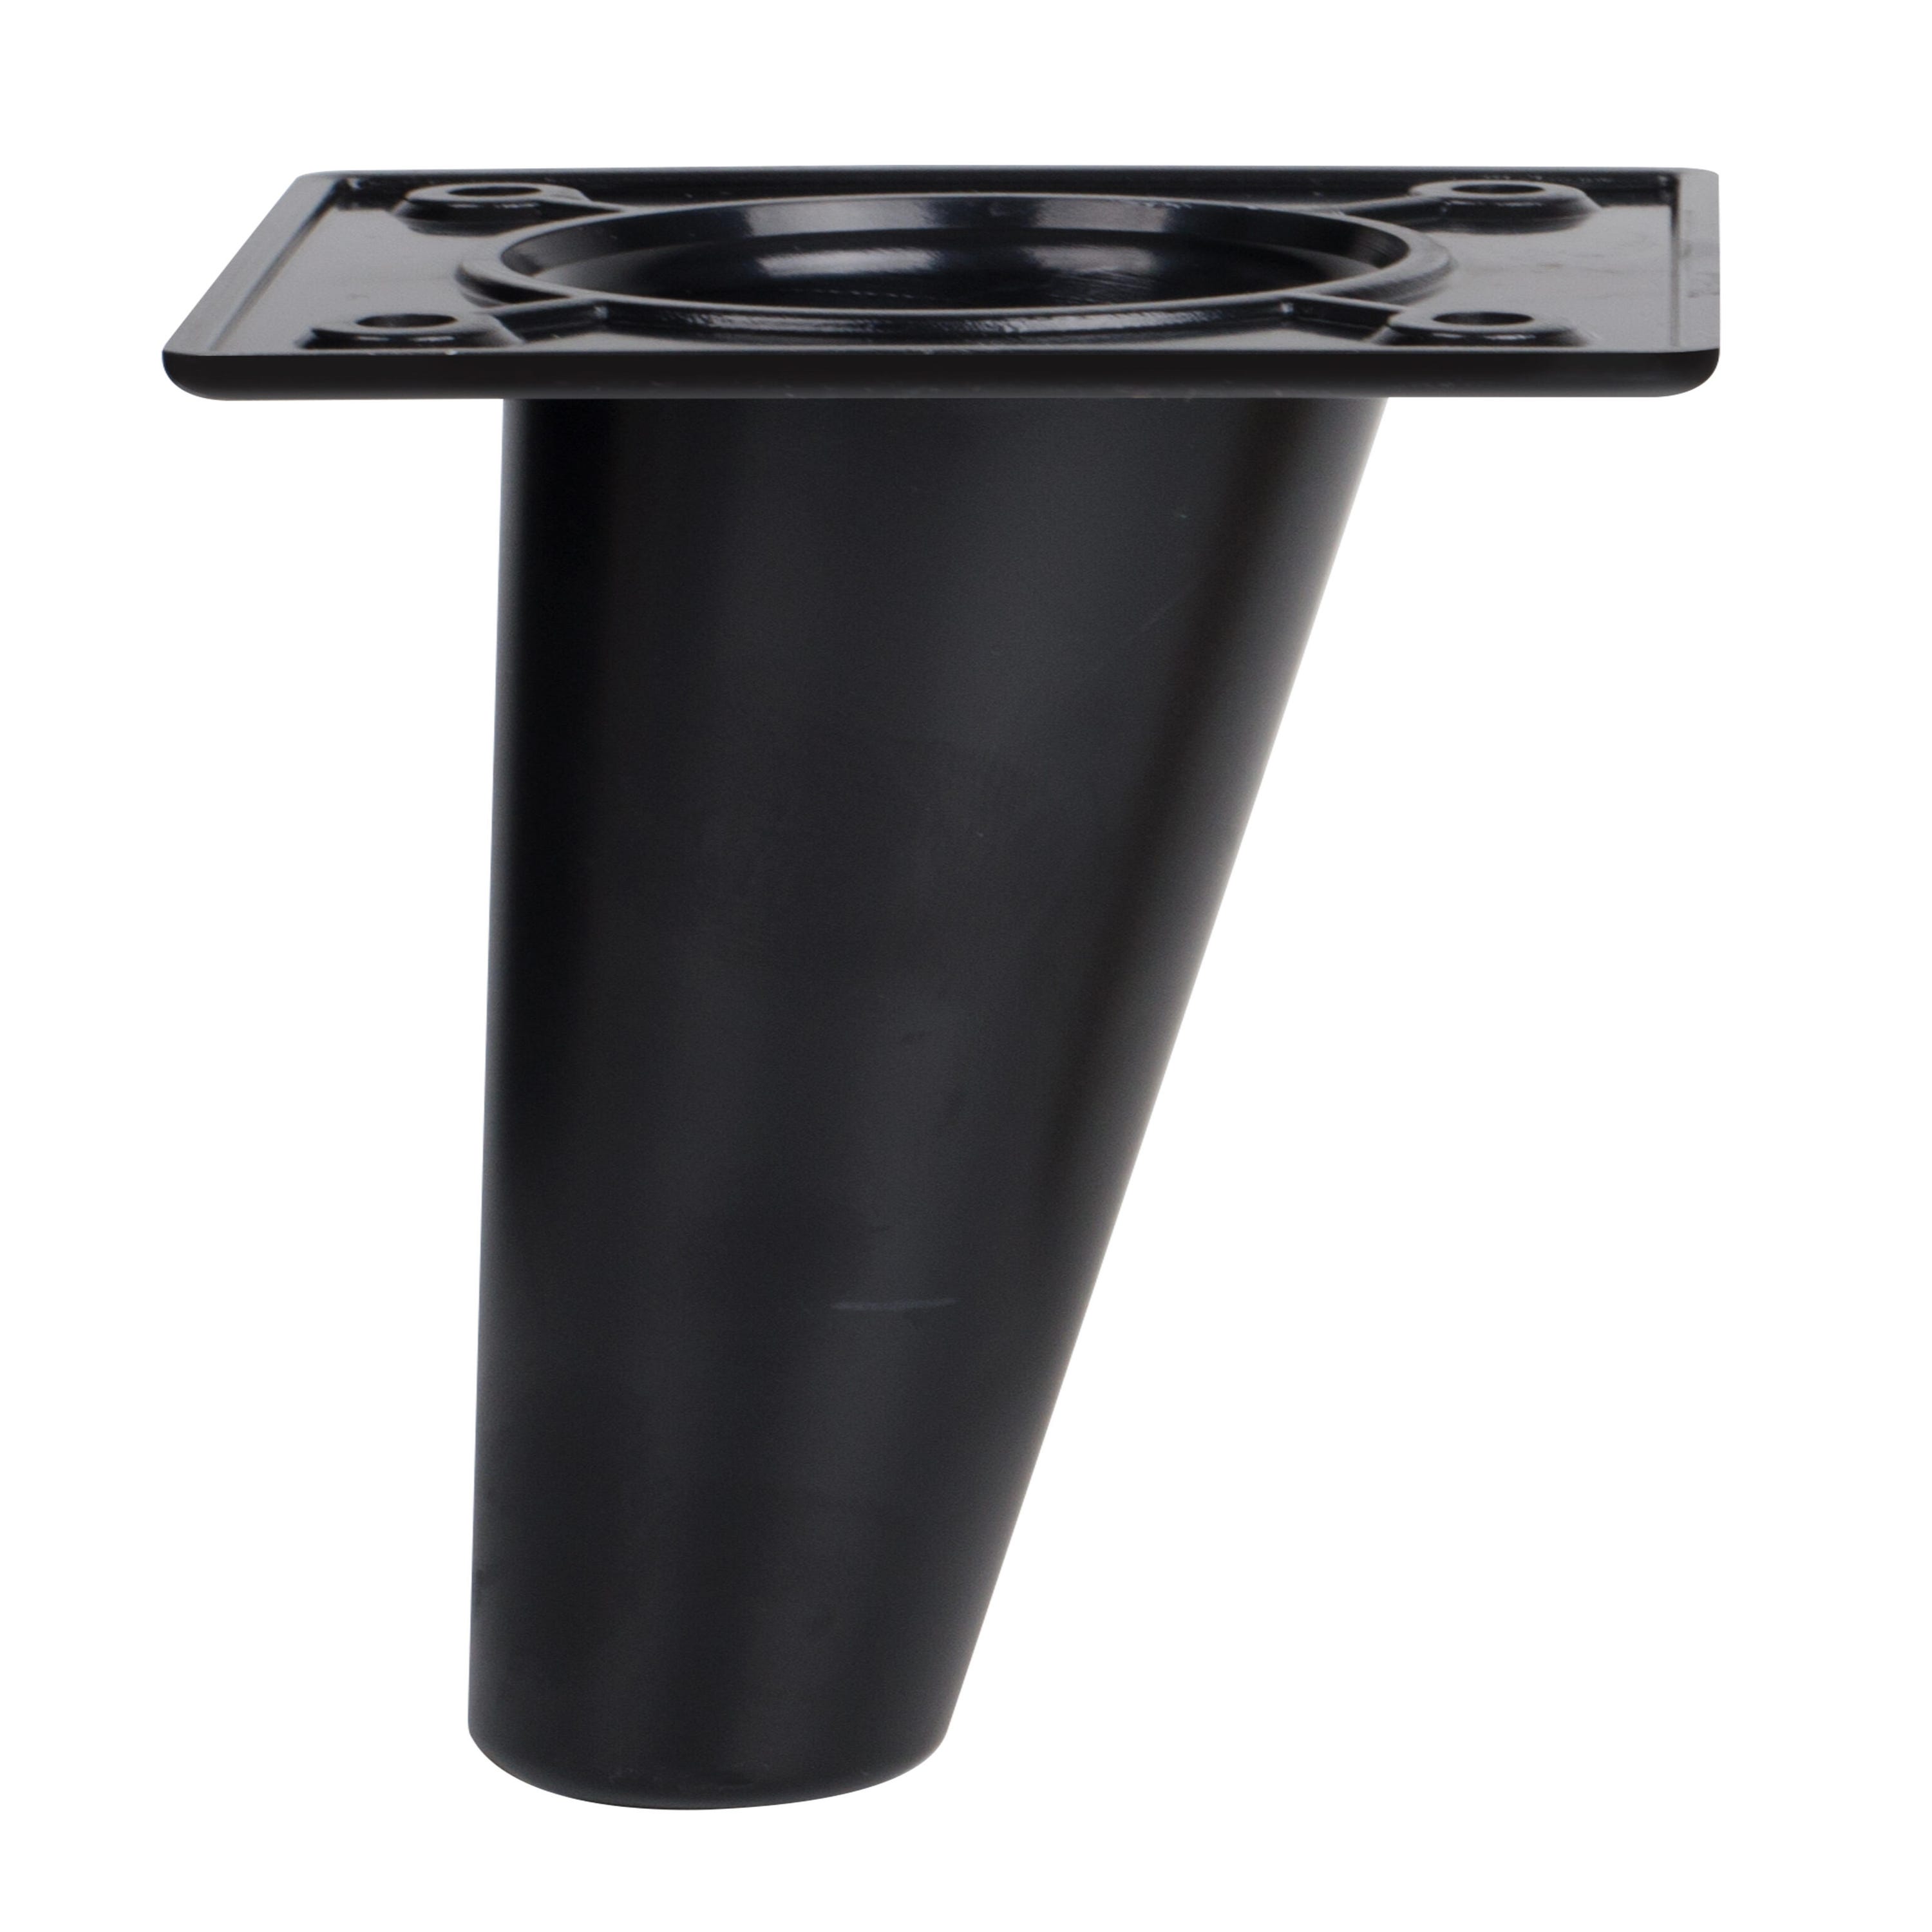 Pata fija de plástico para mueble 8 cm color negro